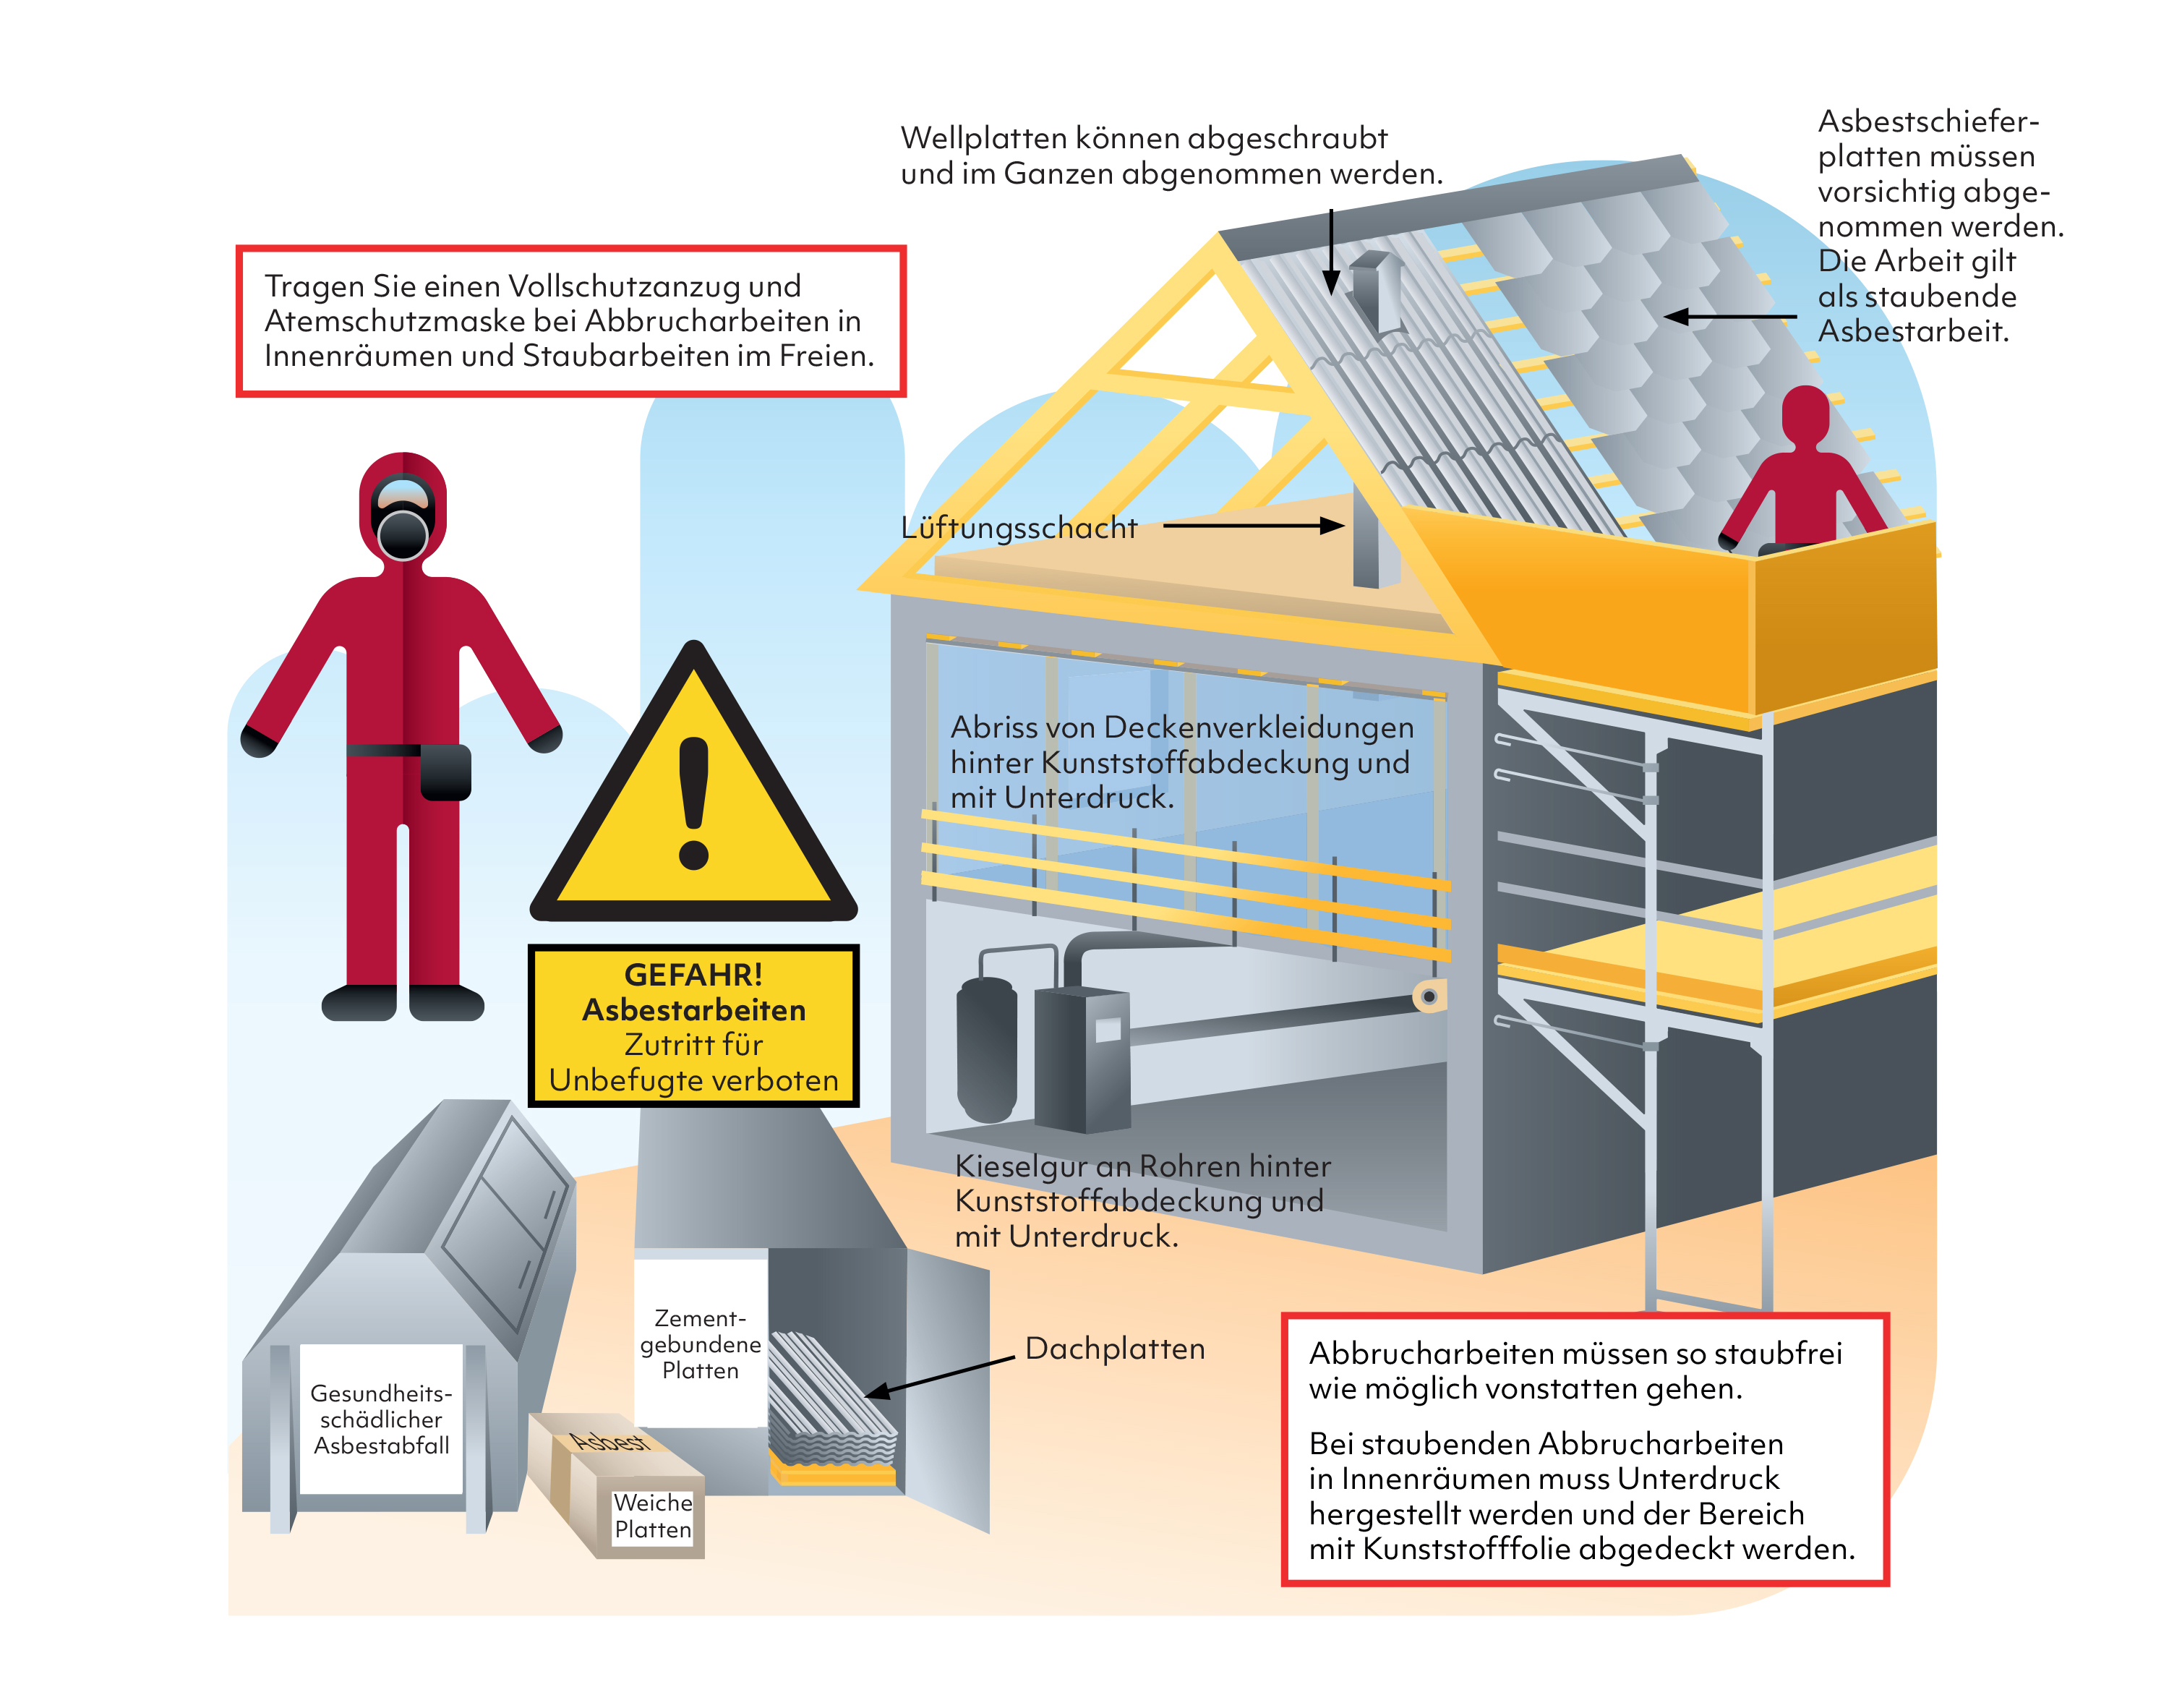 Die Illustration zeigt den sicheren Umgang mit Asbest